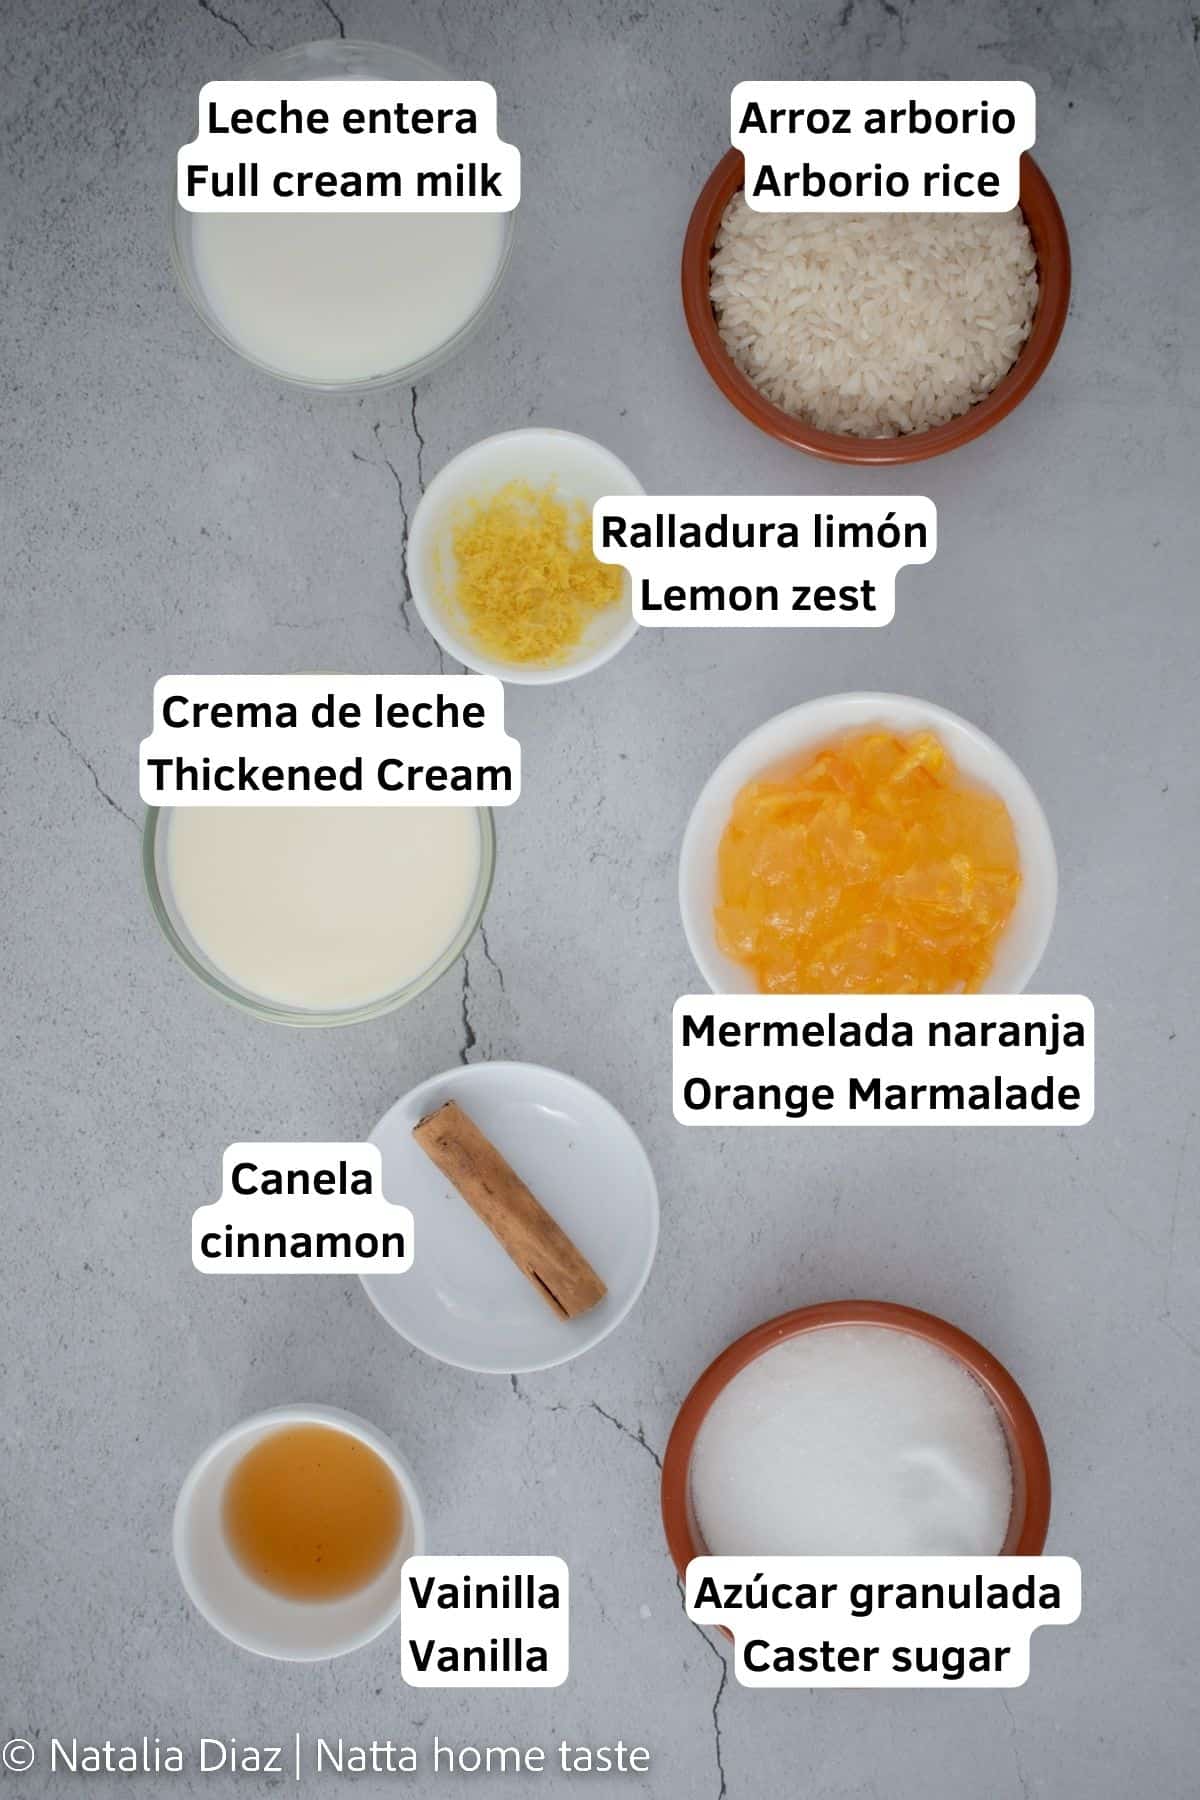 ingredientes para preparar arroz con leche. Todos los ingredientes están servidos en diferentes recipientes. Leche, arroz, crema de leche, ralladura de limón, mermelada, canela, azúcar, extracto de vainilla.